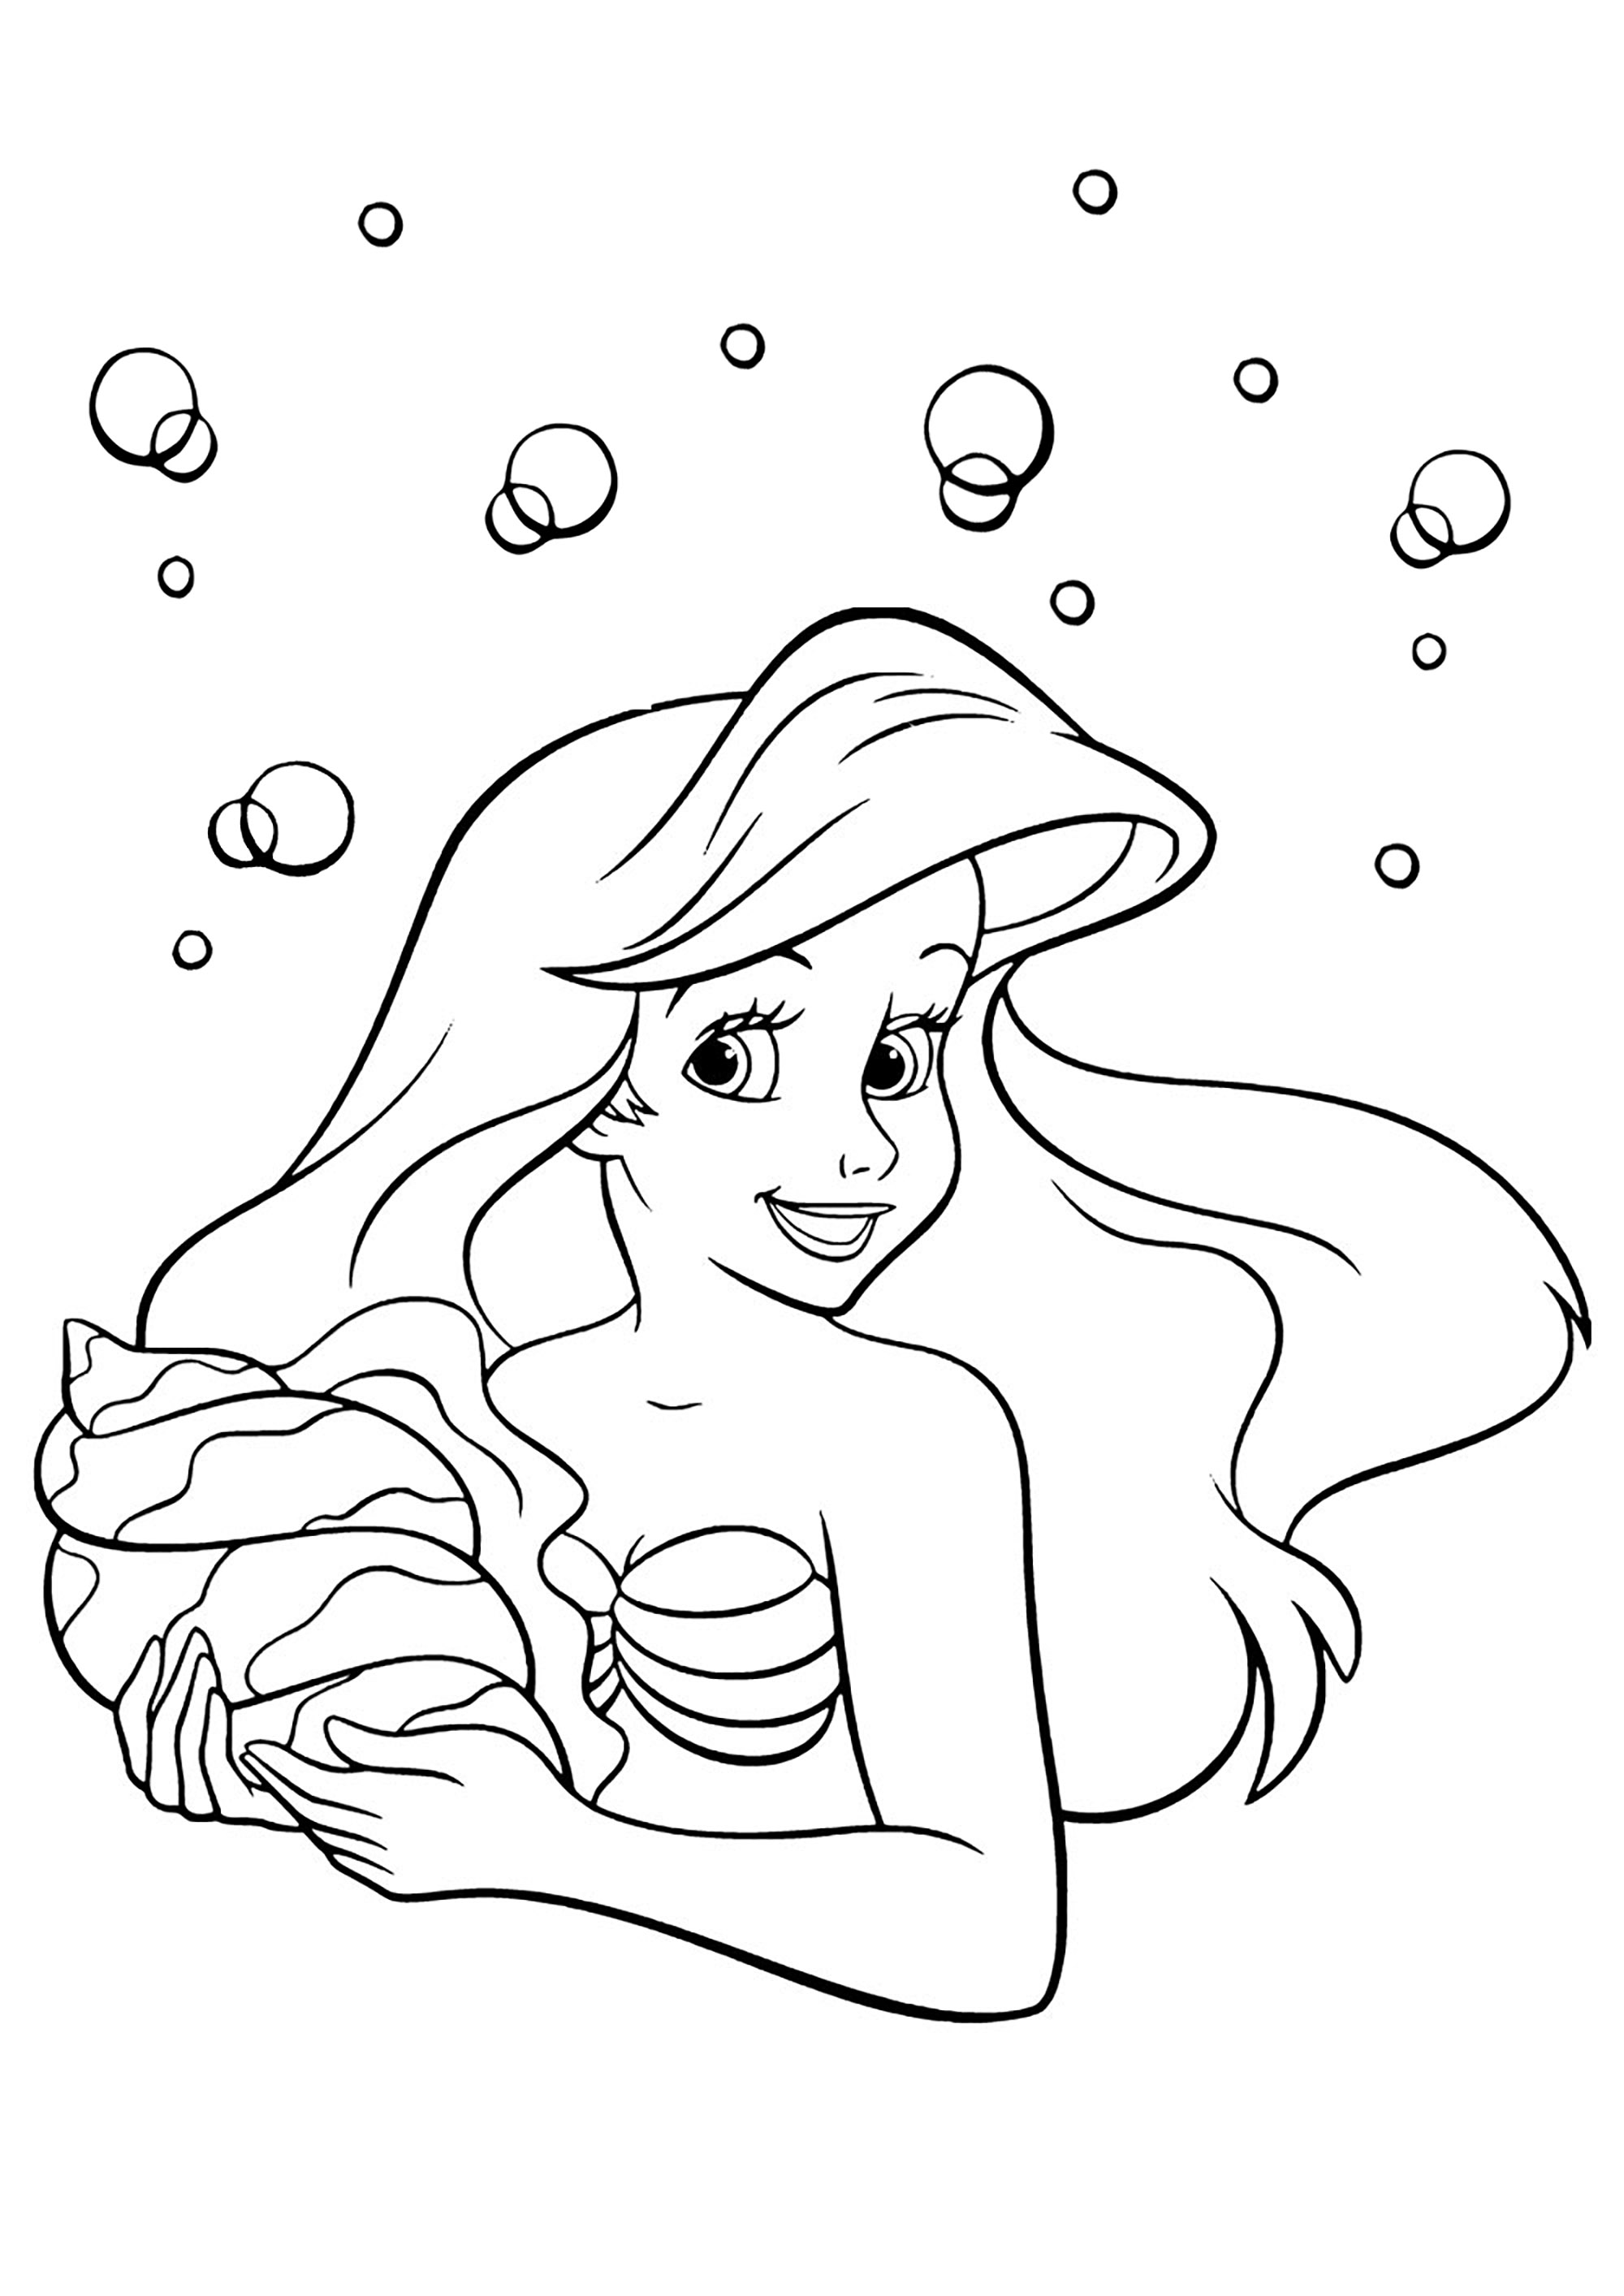 Ariel la petite sirène et un joli coquillage. Un coloriage très simple avec peu de détails